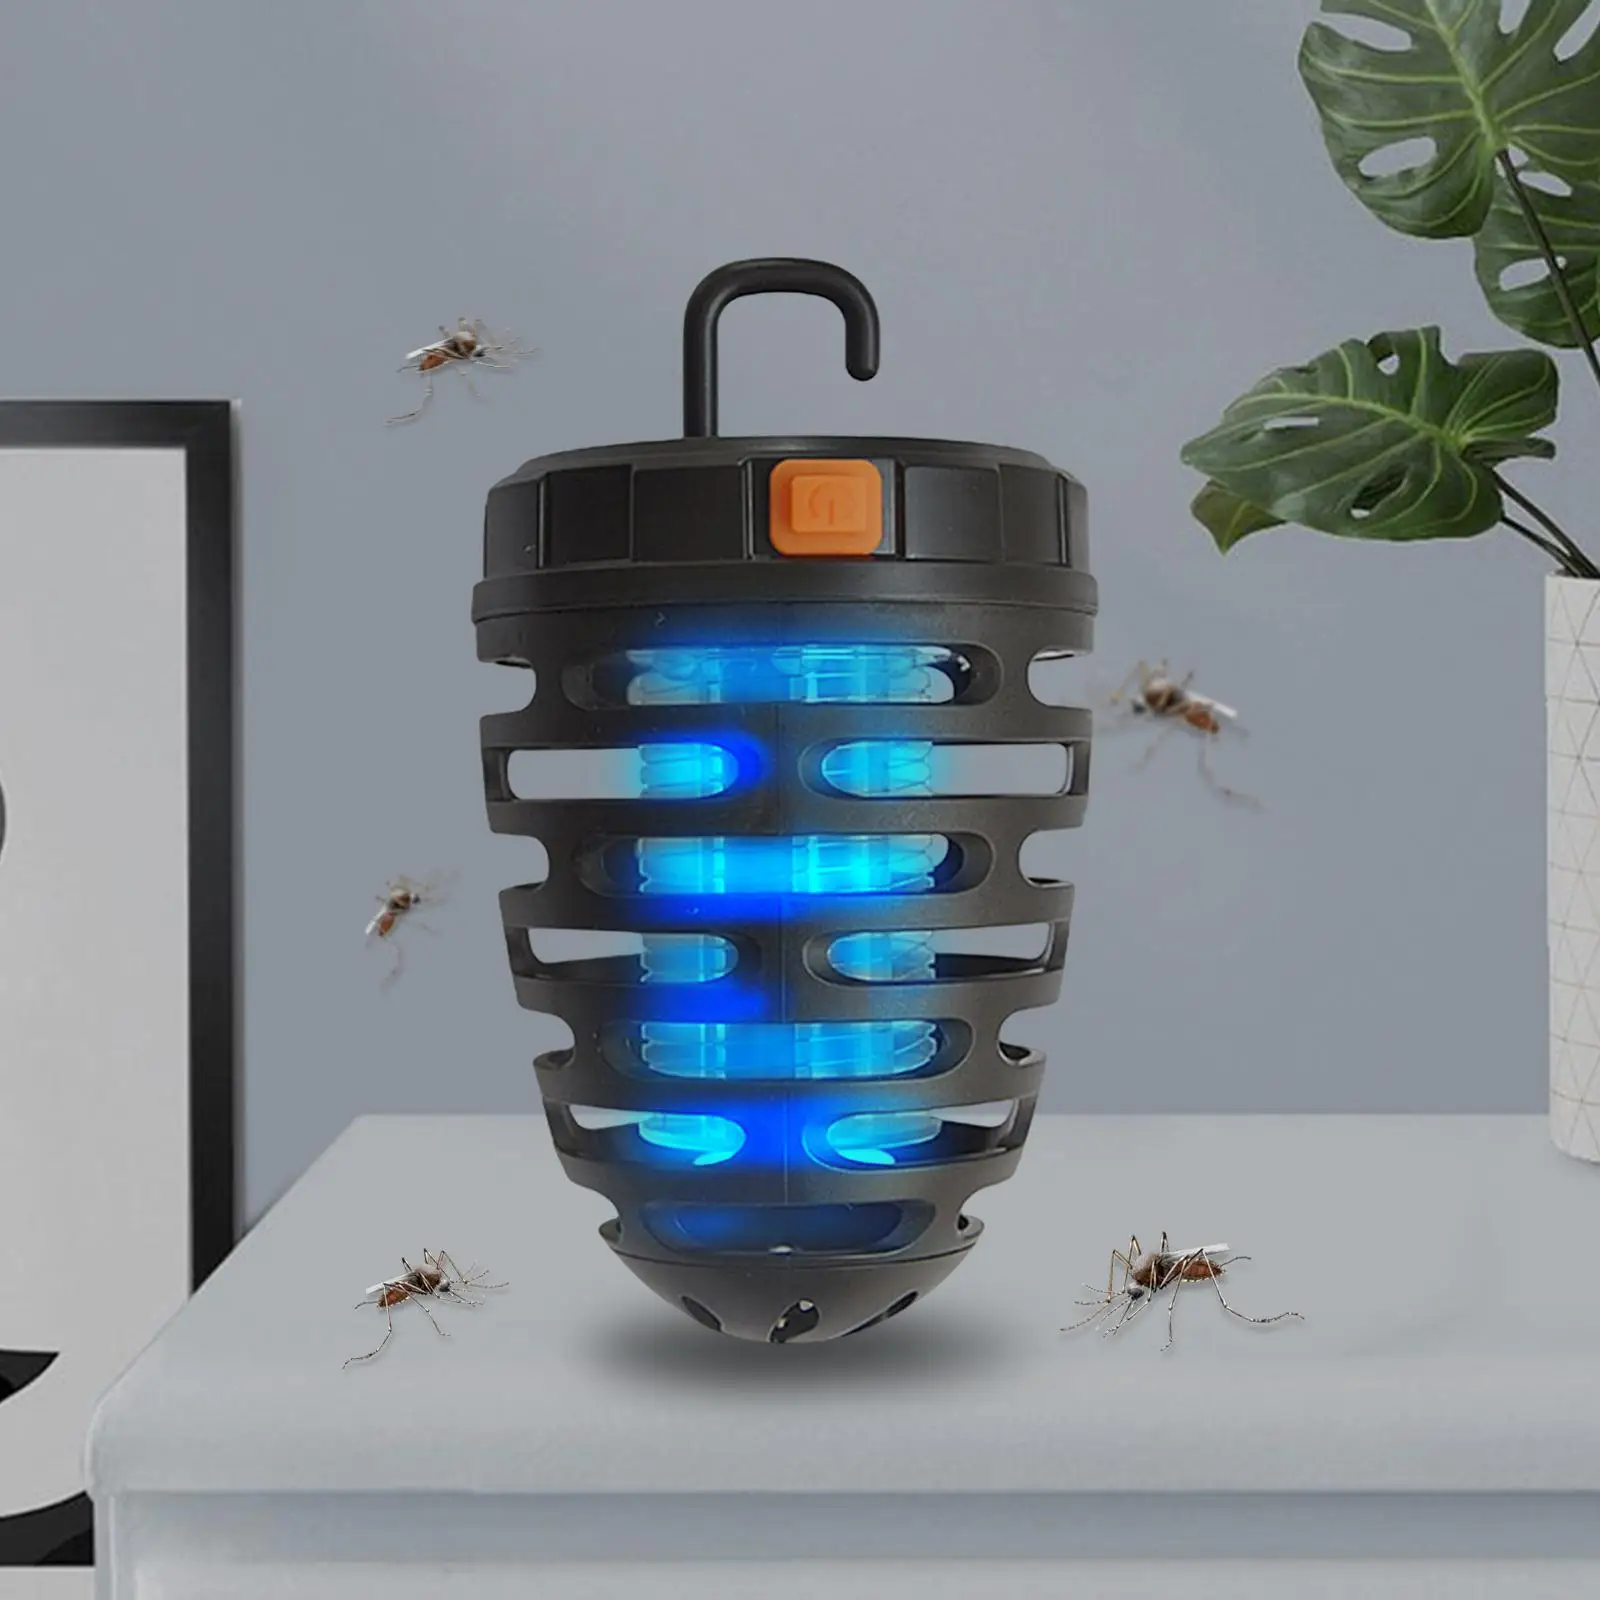  Killer Lamp Killer Trap  Repellent  Zapper for Household